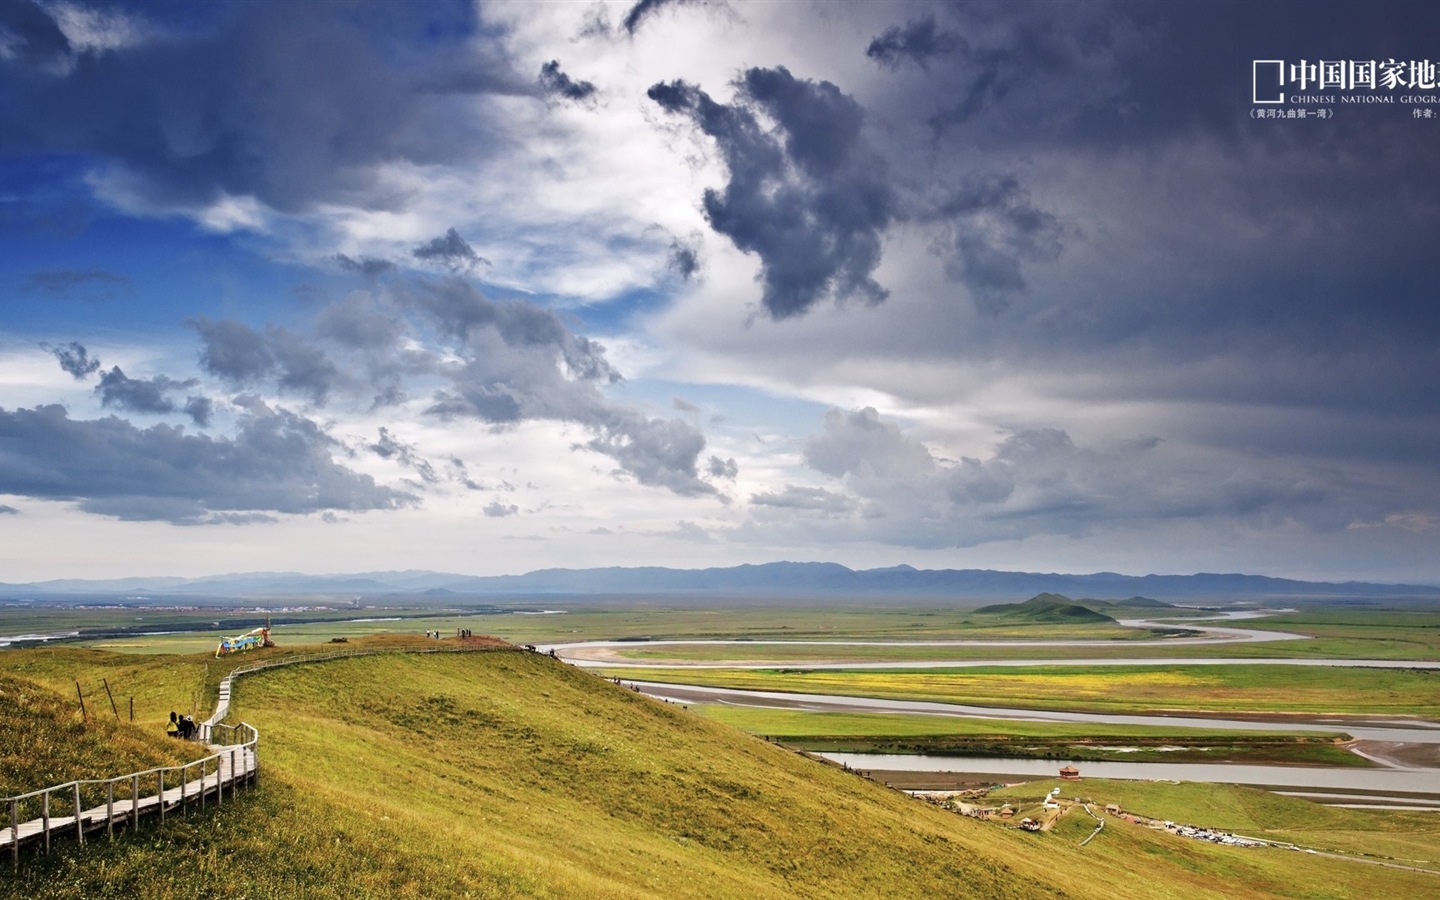 Chinese National Geographic HD Landschaft Hintergrundbilder #24 - 1440x900